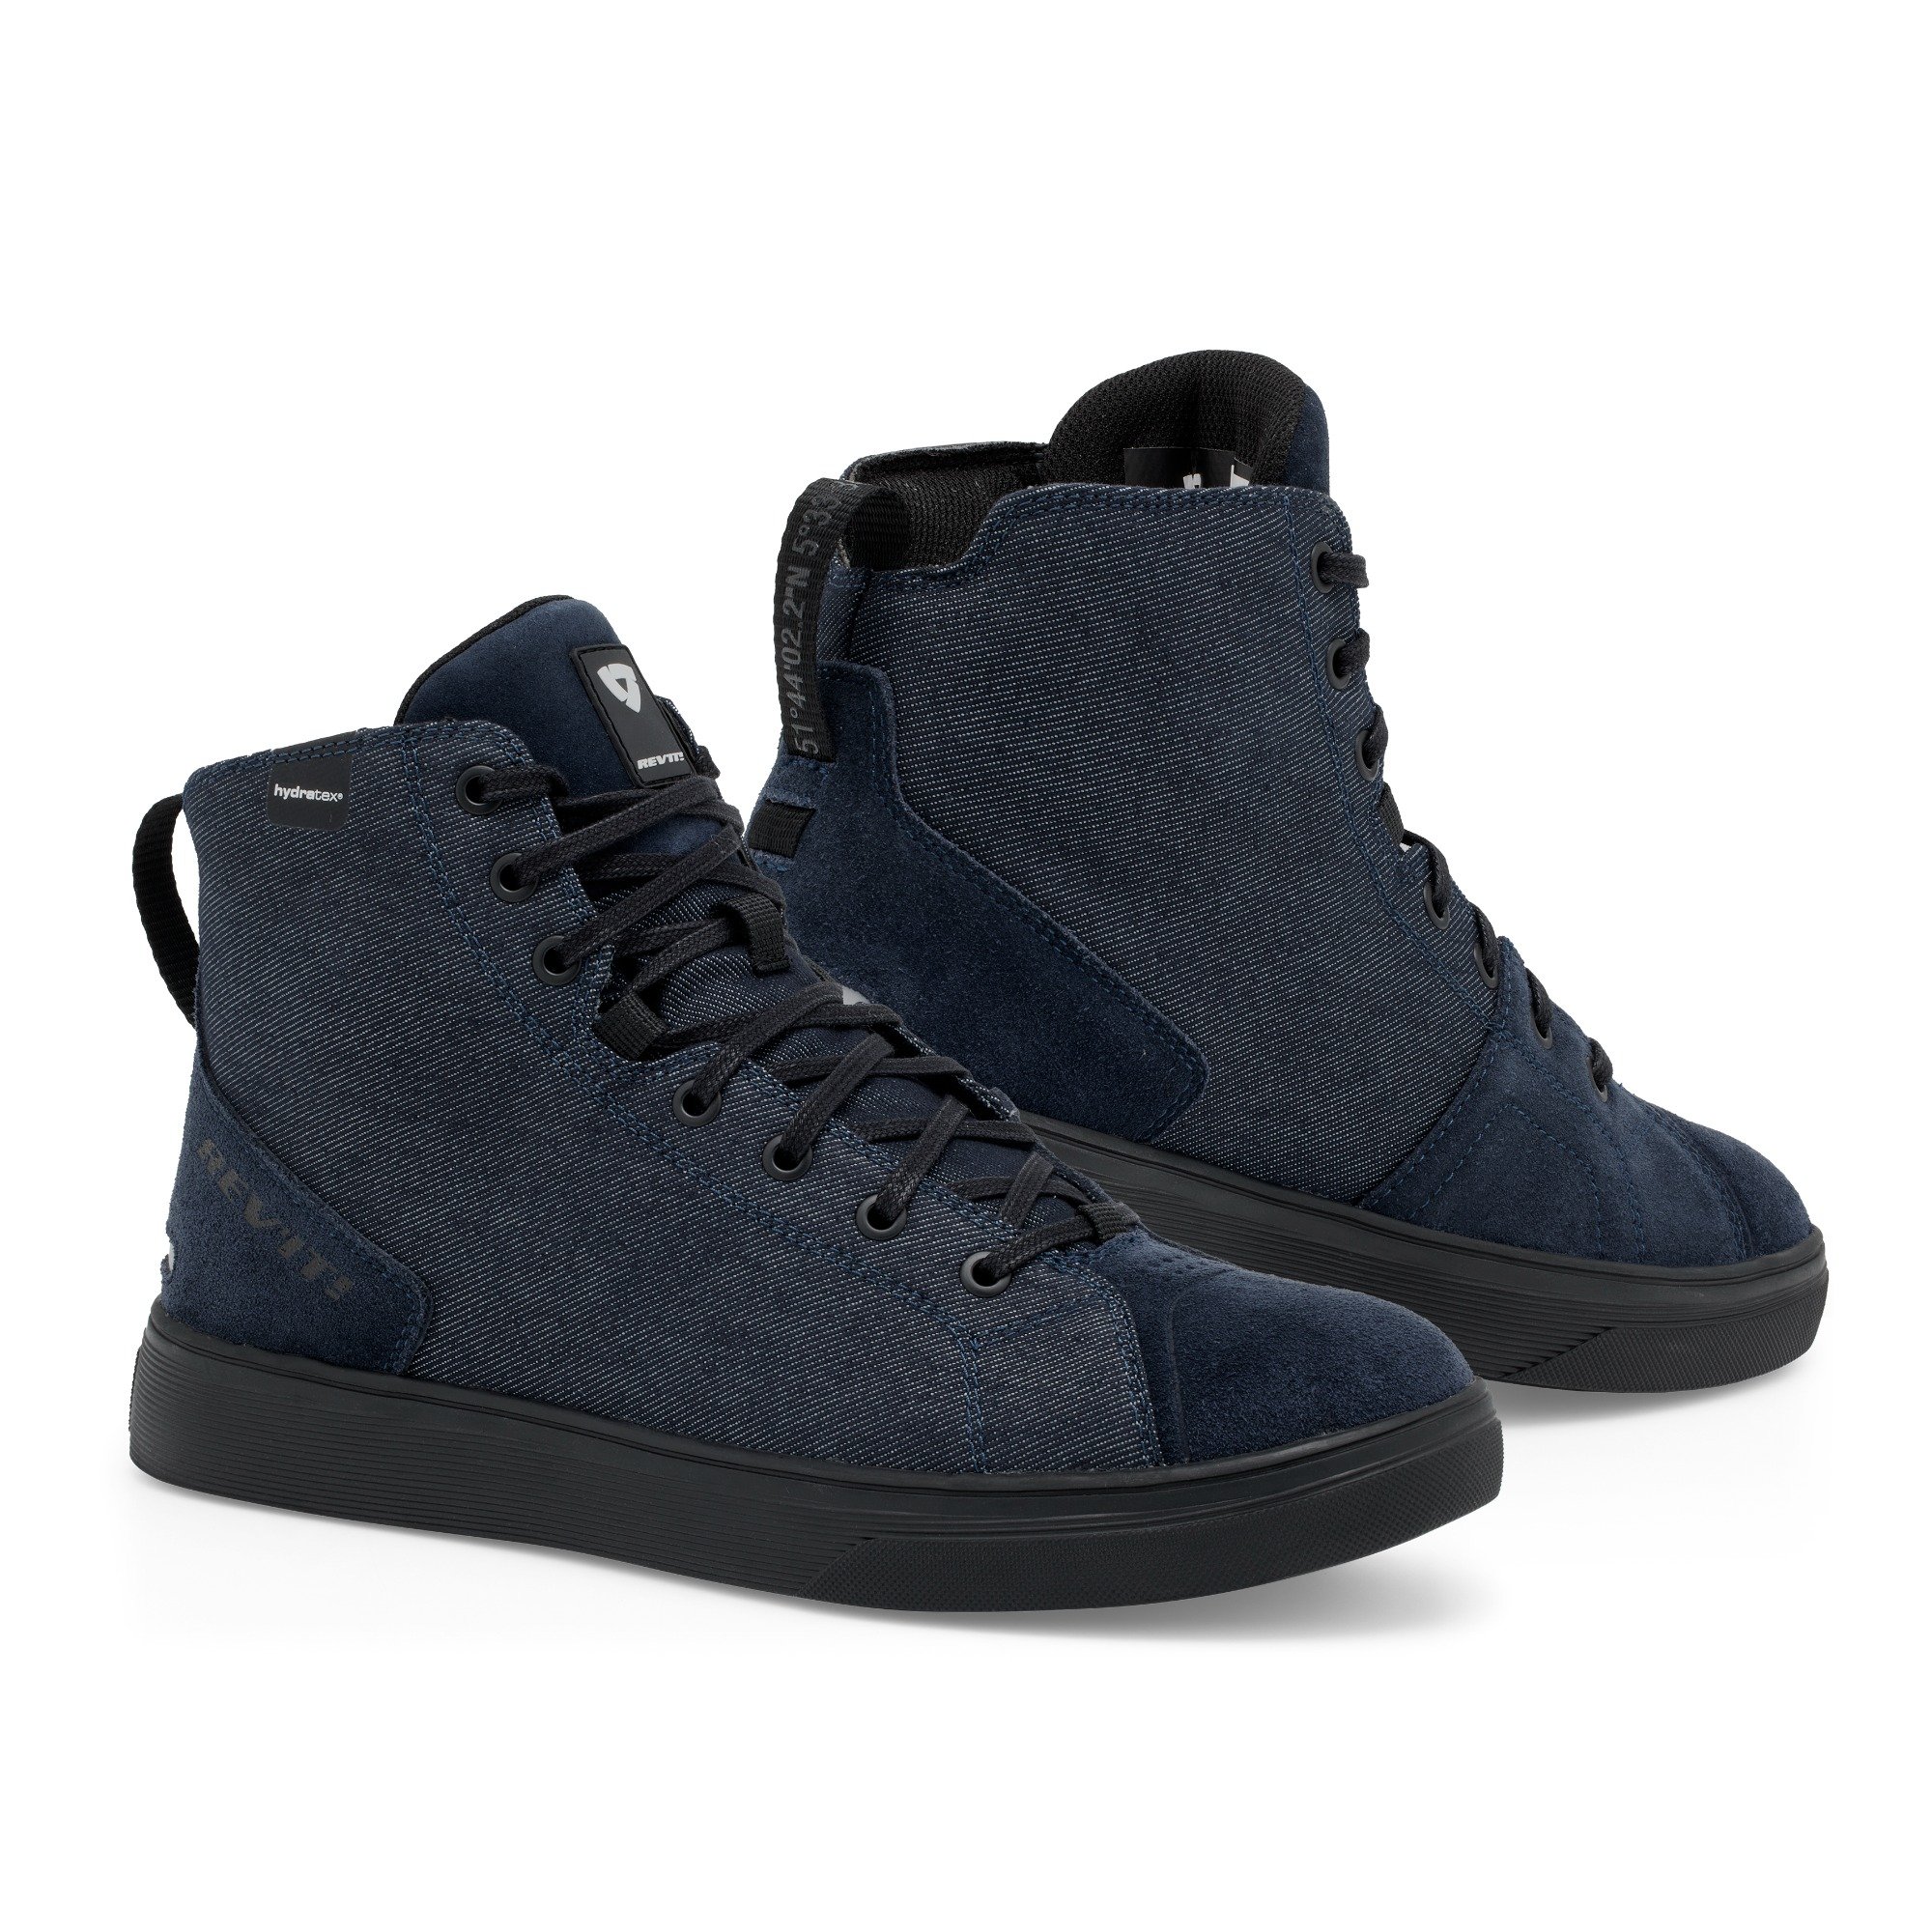 Image of REV'IT! Delta H2O Chaussures Foncé Bleu Noir Taille 40